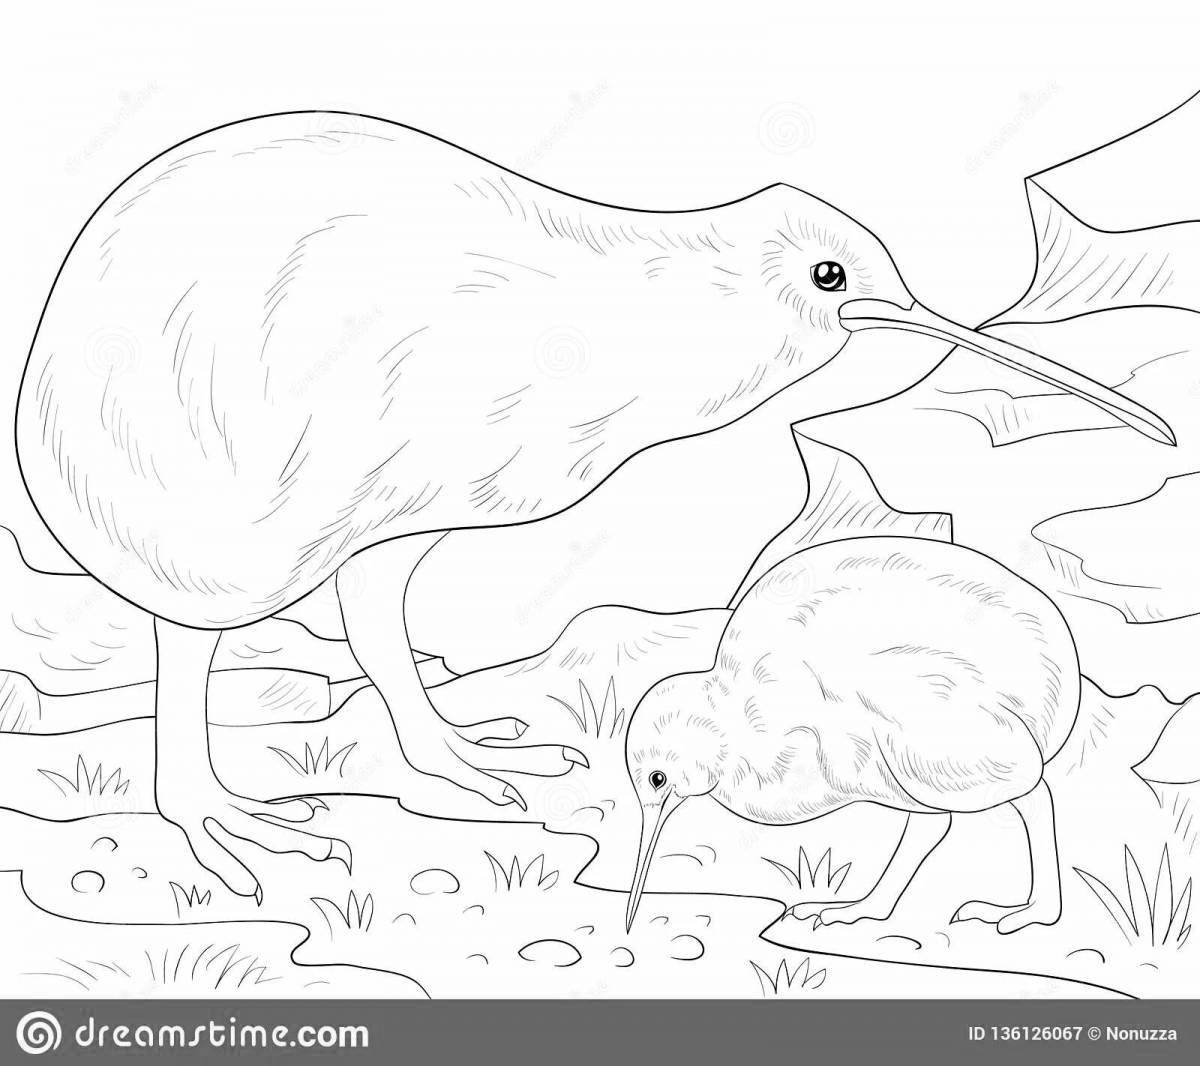 Joyful kiwi bird coloring book